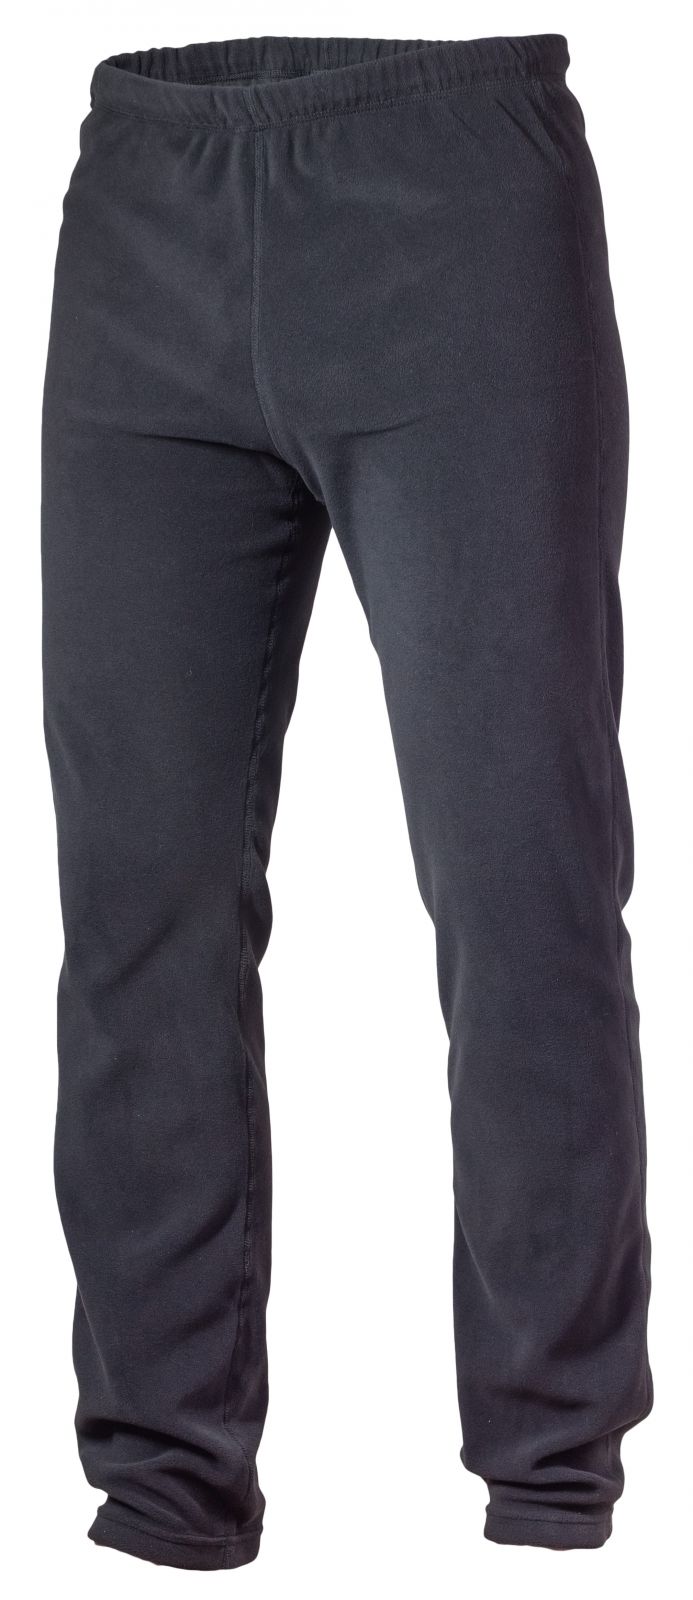 Warmpeace Jive black kalhoty z Polartec Micro -